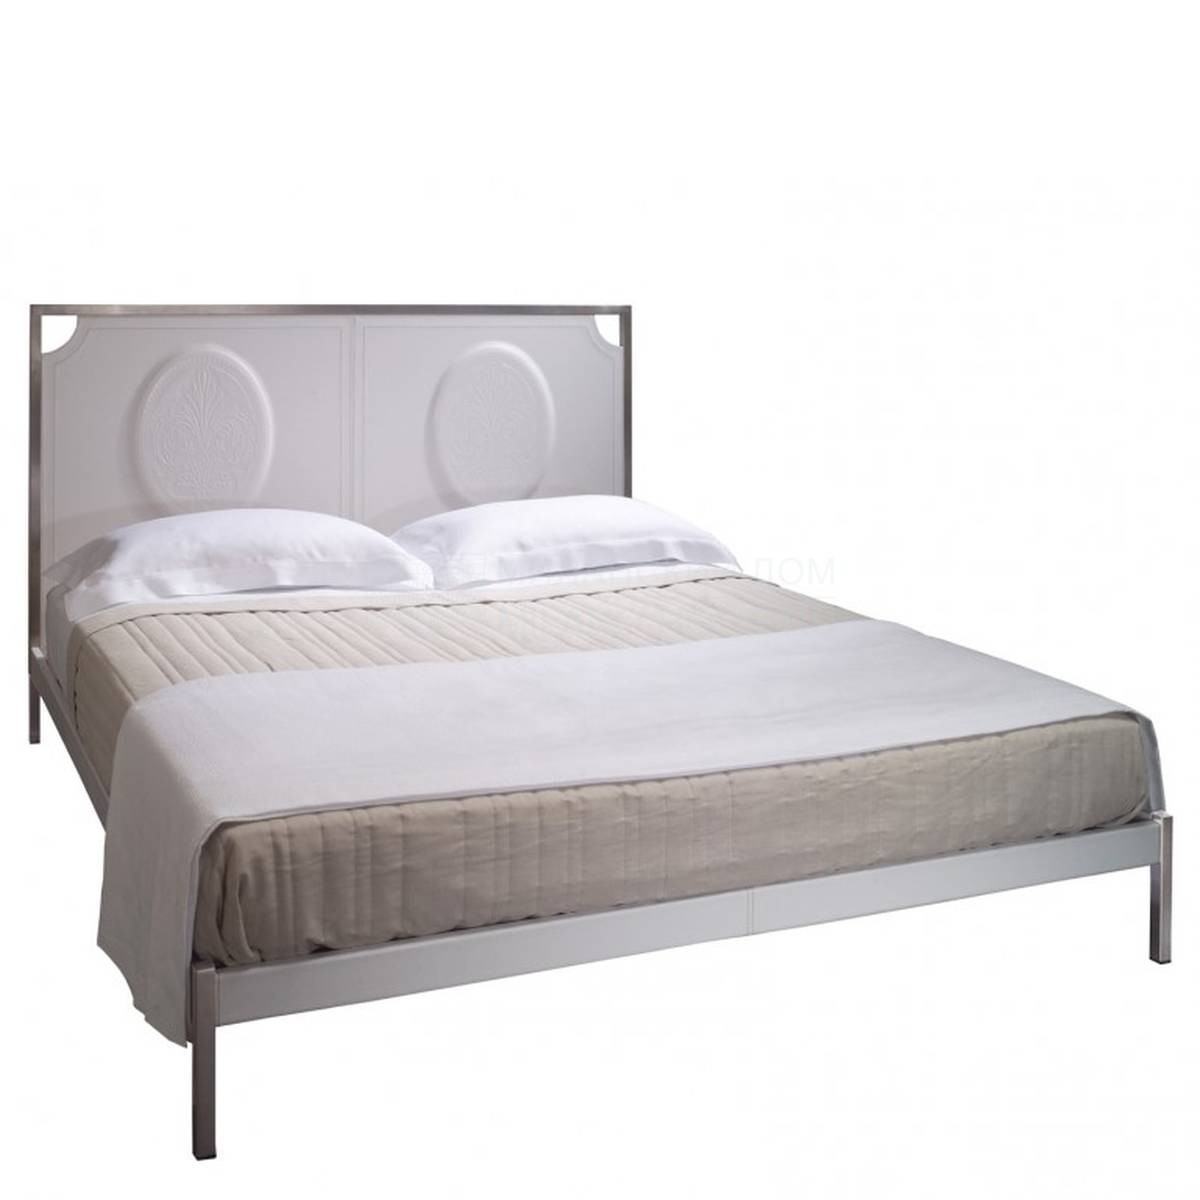 Двуспальная кровать Testa Bed из Италии фабрики SAWAYA & MORONI